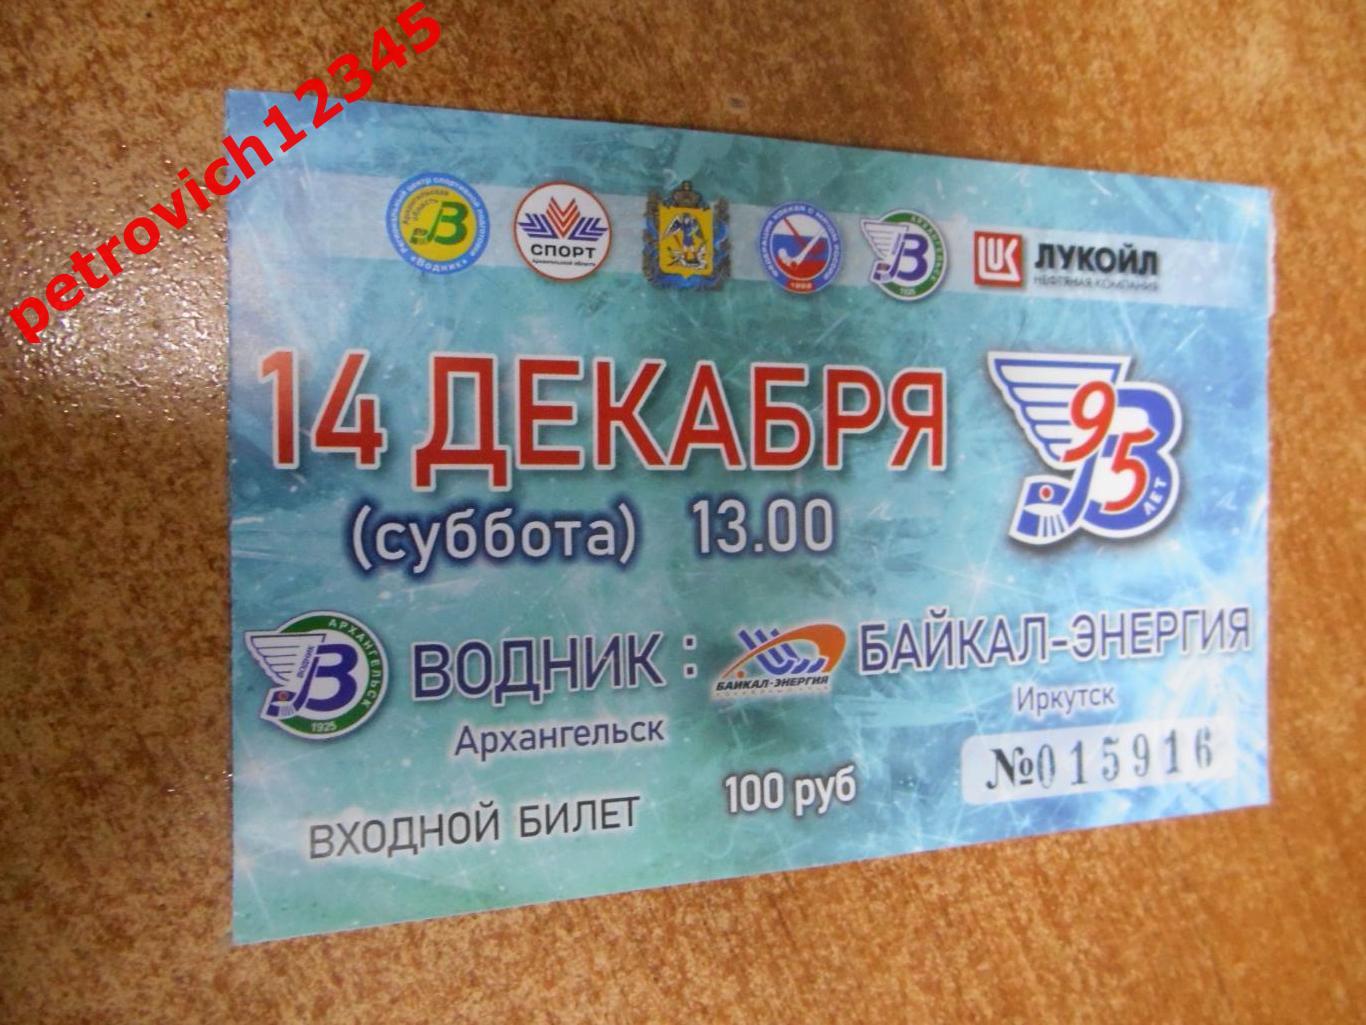 Водник Архангельск - Байкал-Энергия Иркутск - 14 декабря